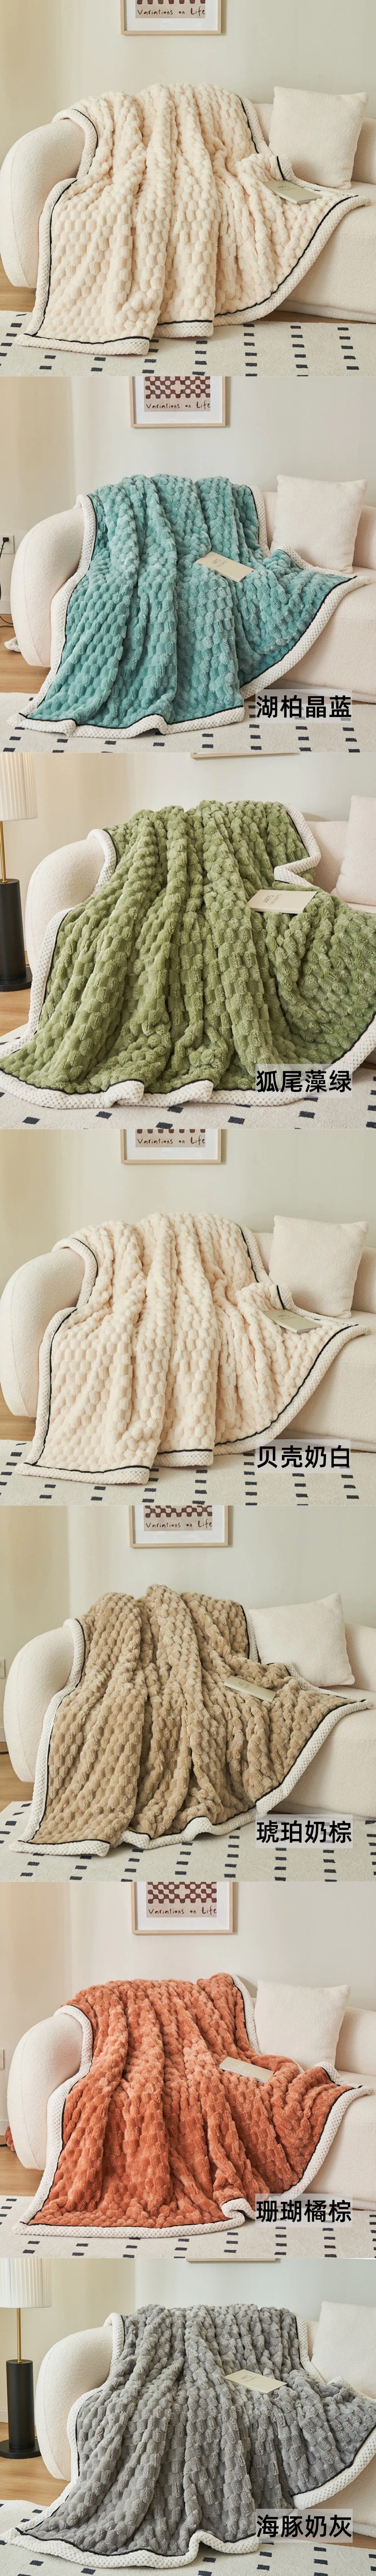 【中国直邮】Lullabuy 适柔亲肤金龟绒毛毯毯子秋冬床上用品被子 海豚奶灰 120*200cm